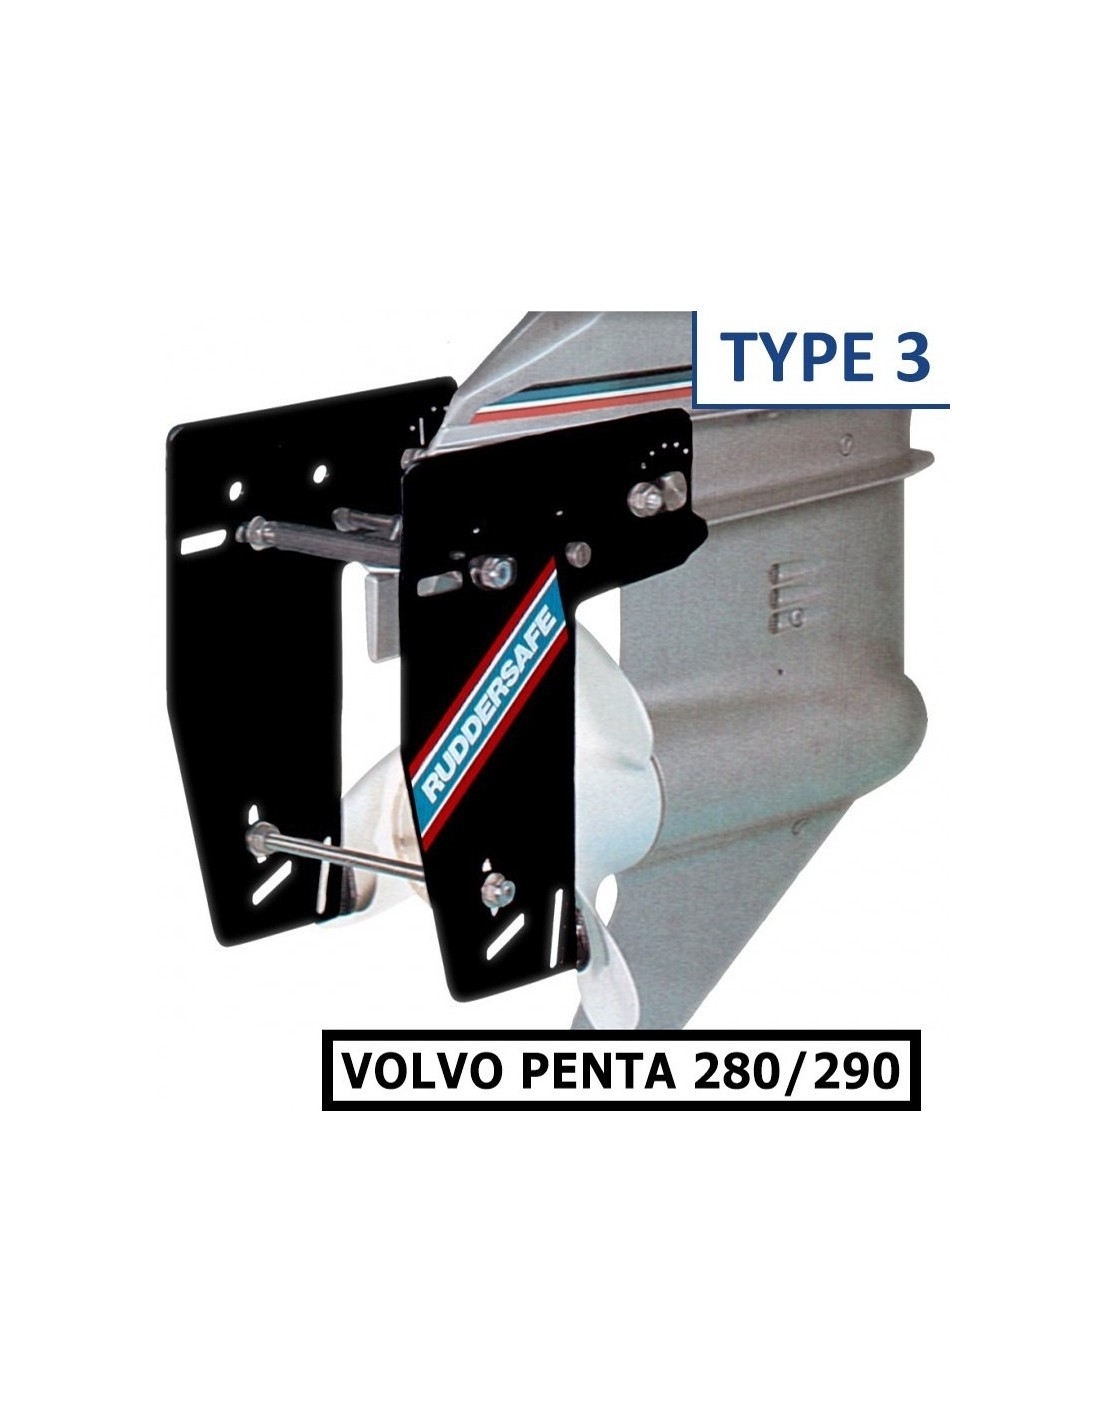 Ruddersafe Volvo Penta Type 3 - Il timone perfetto per la tua barca